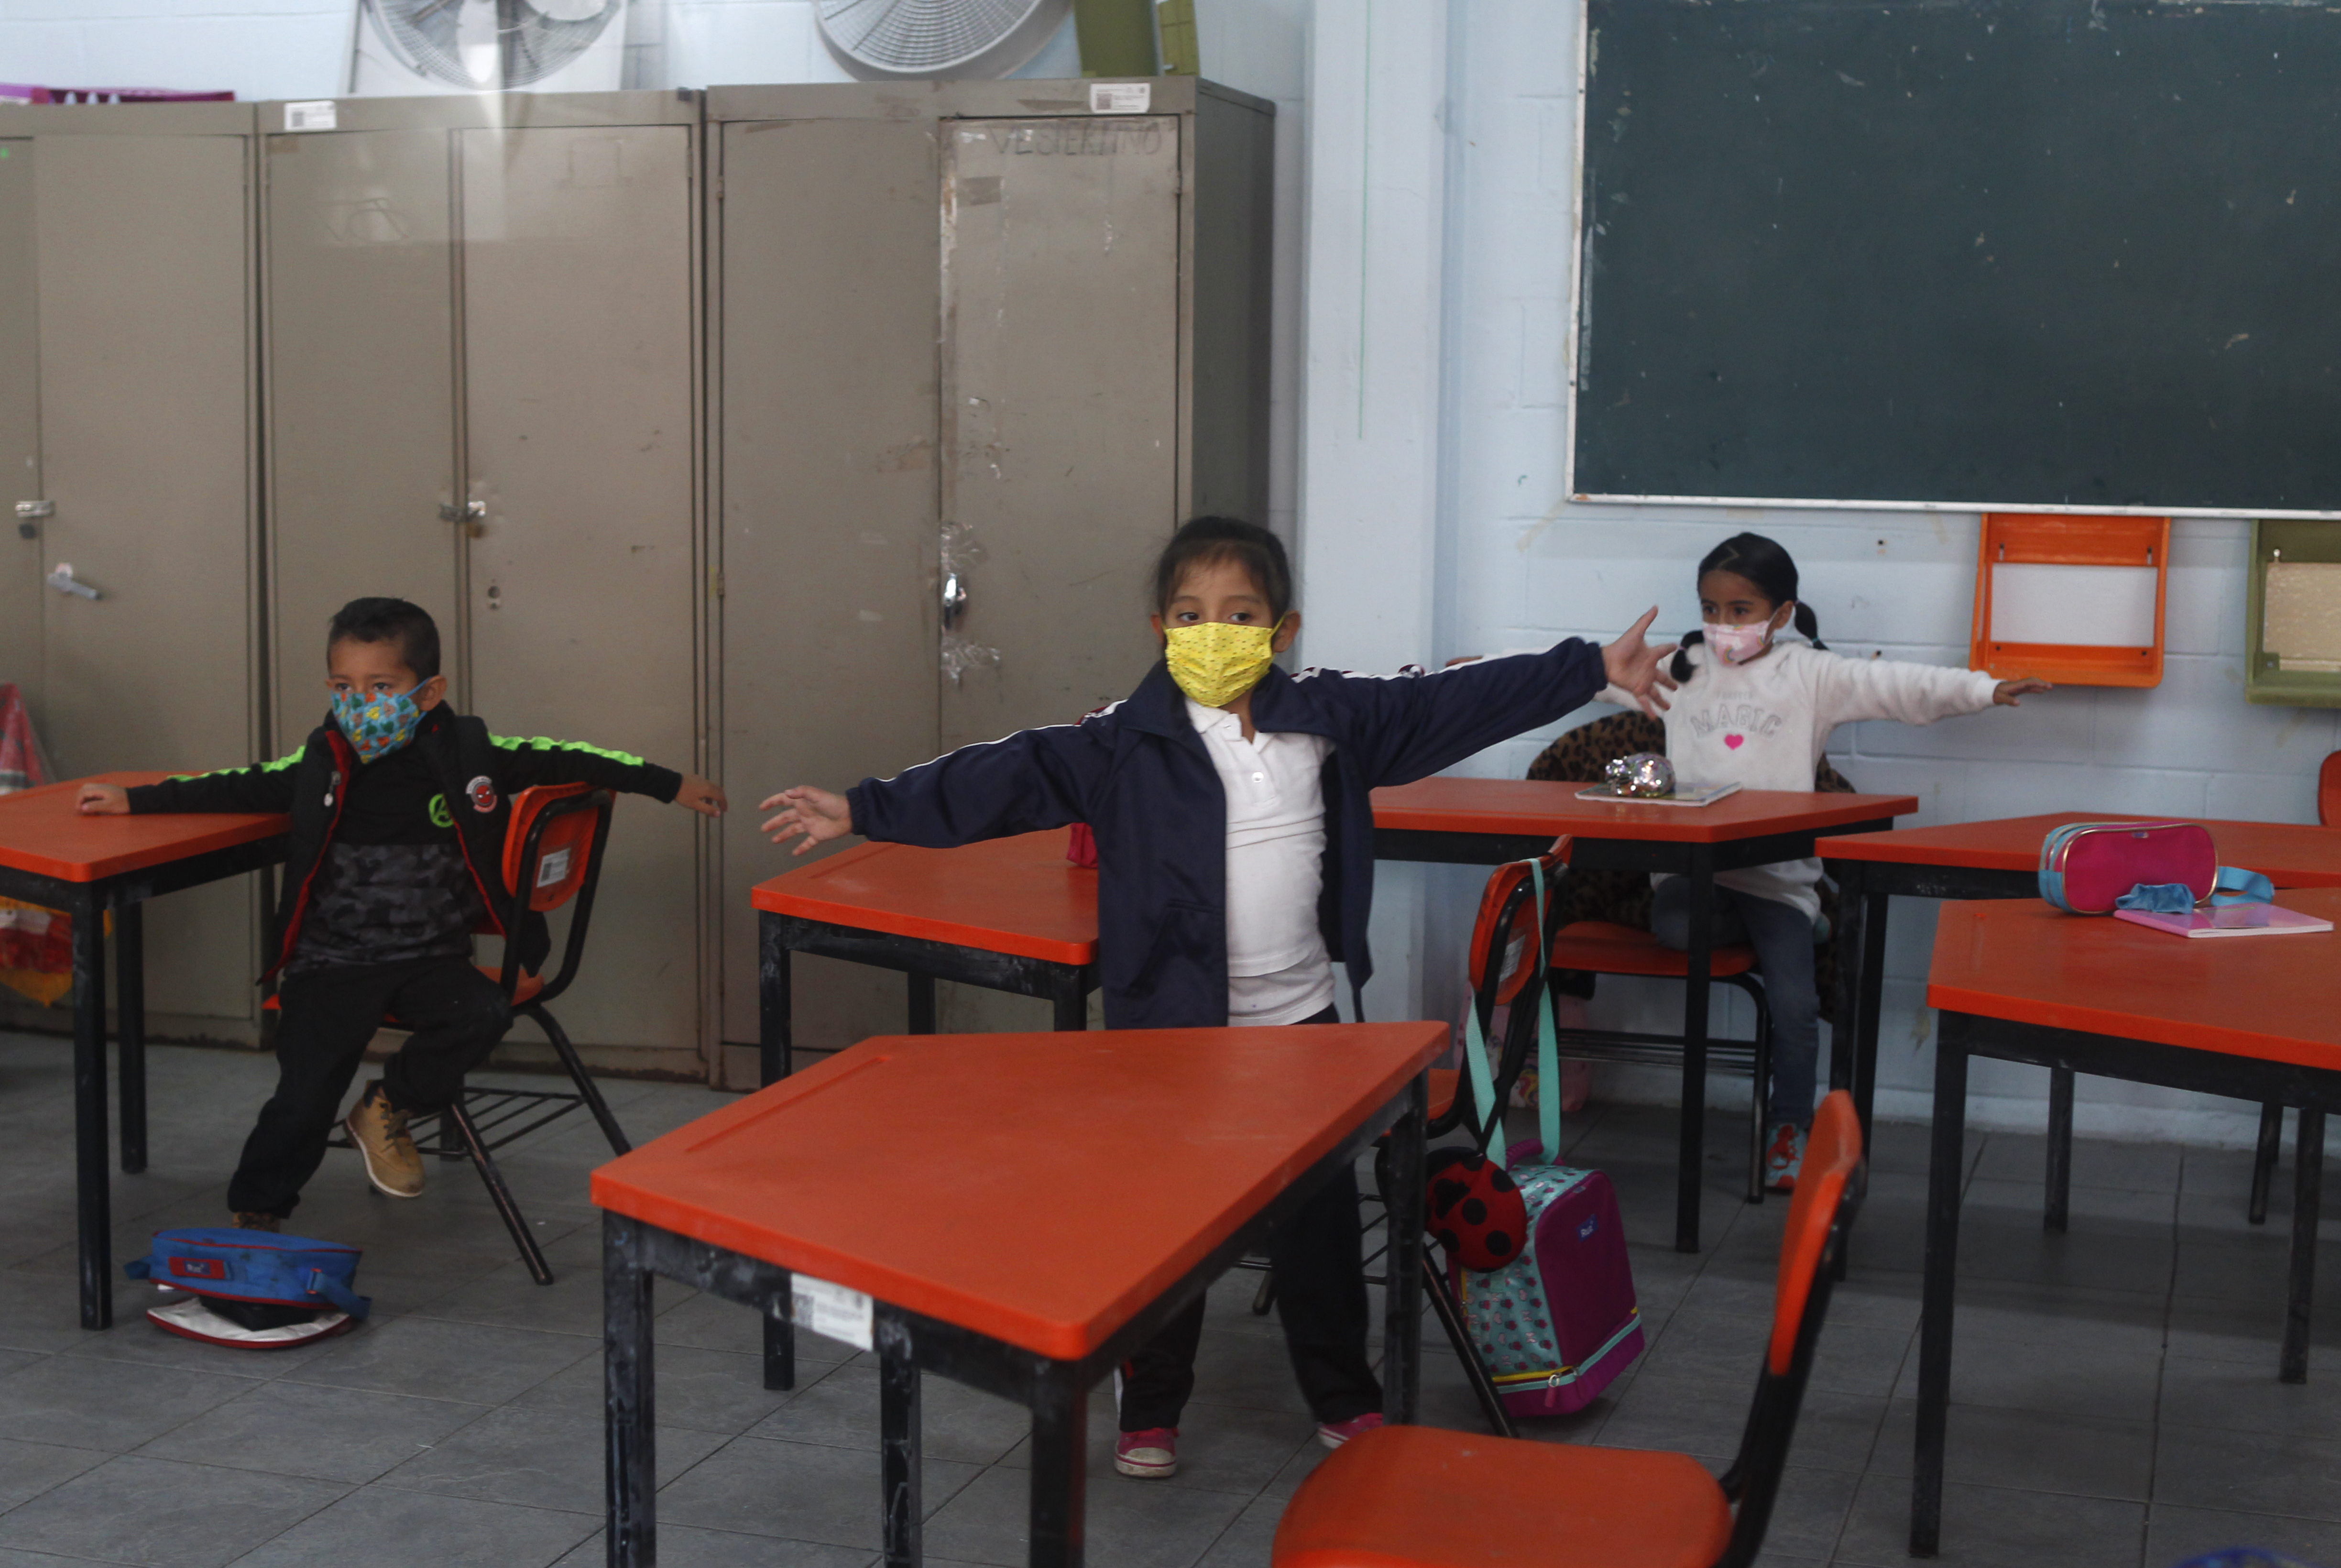 Estudiantes toman clase en una escuela de la CDMX.
Foto: Karina Hernández / Infobae